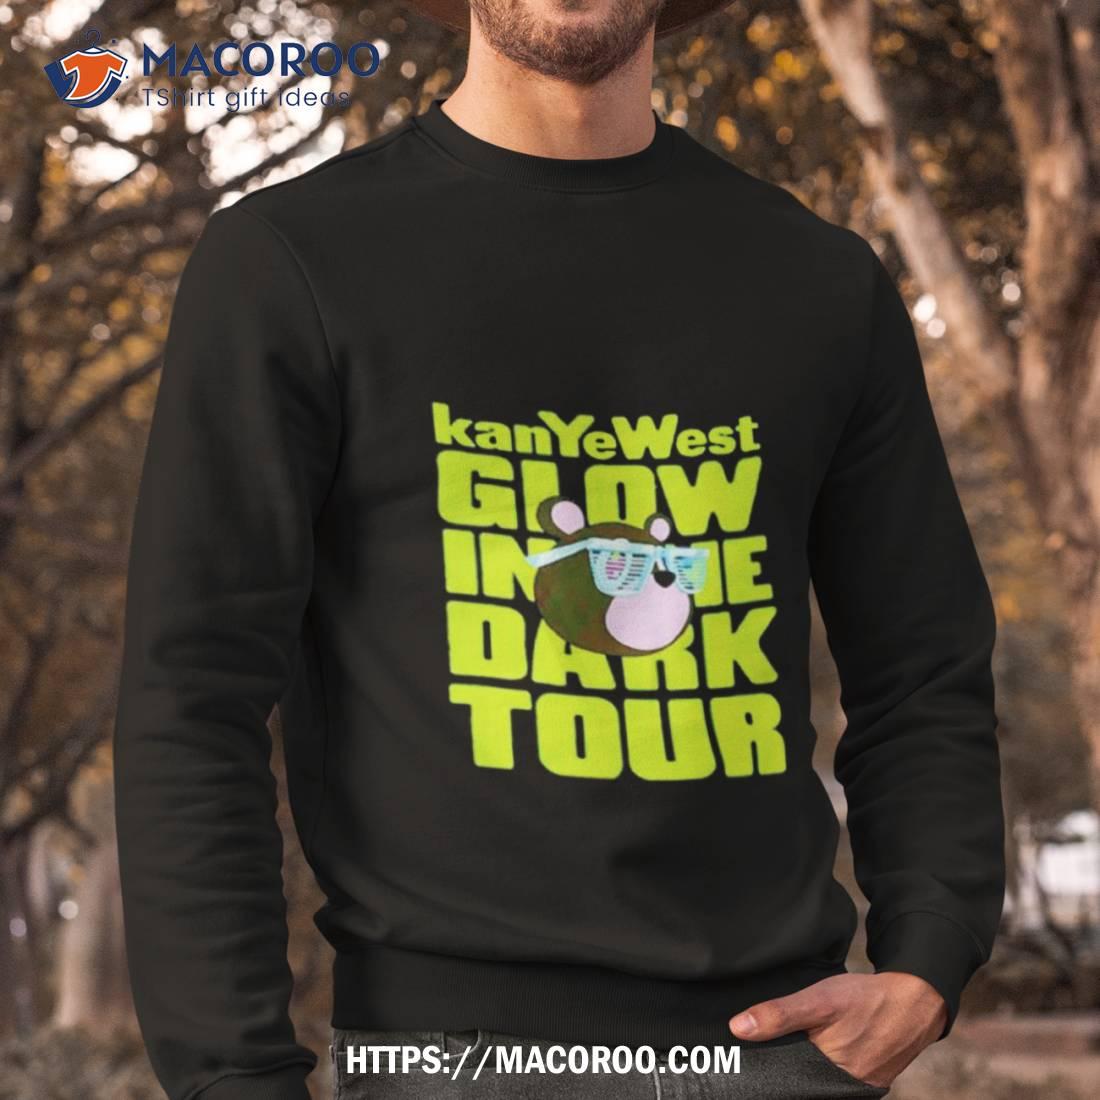 Kanye West Takashi Glow In The Dark Tour Shirt